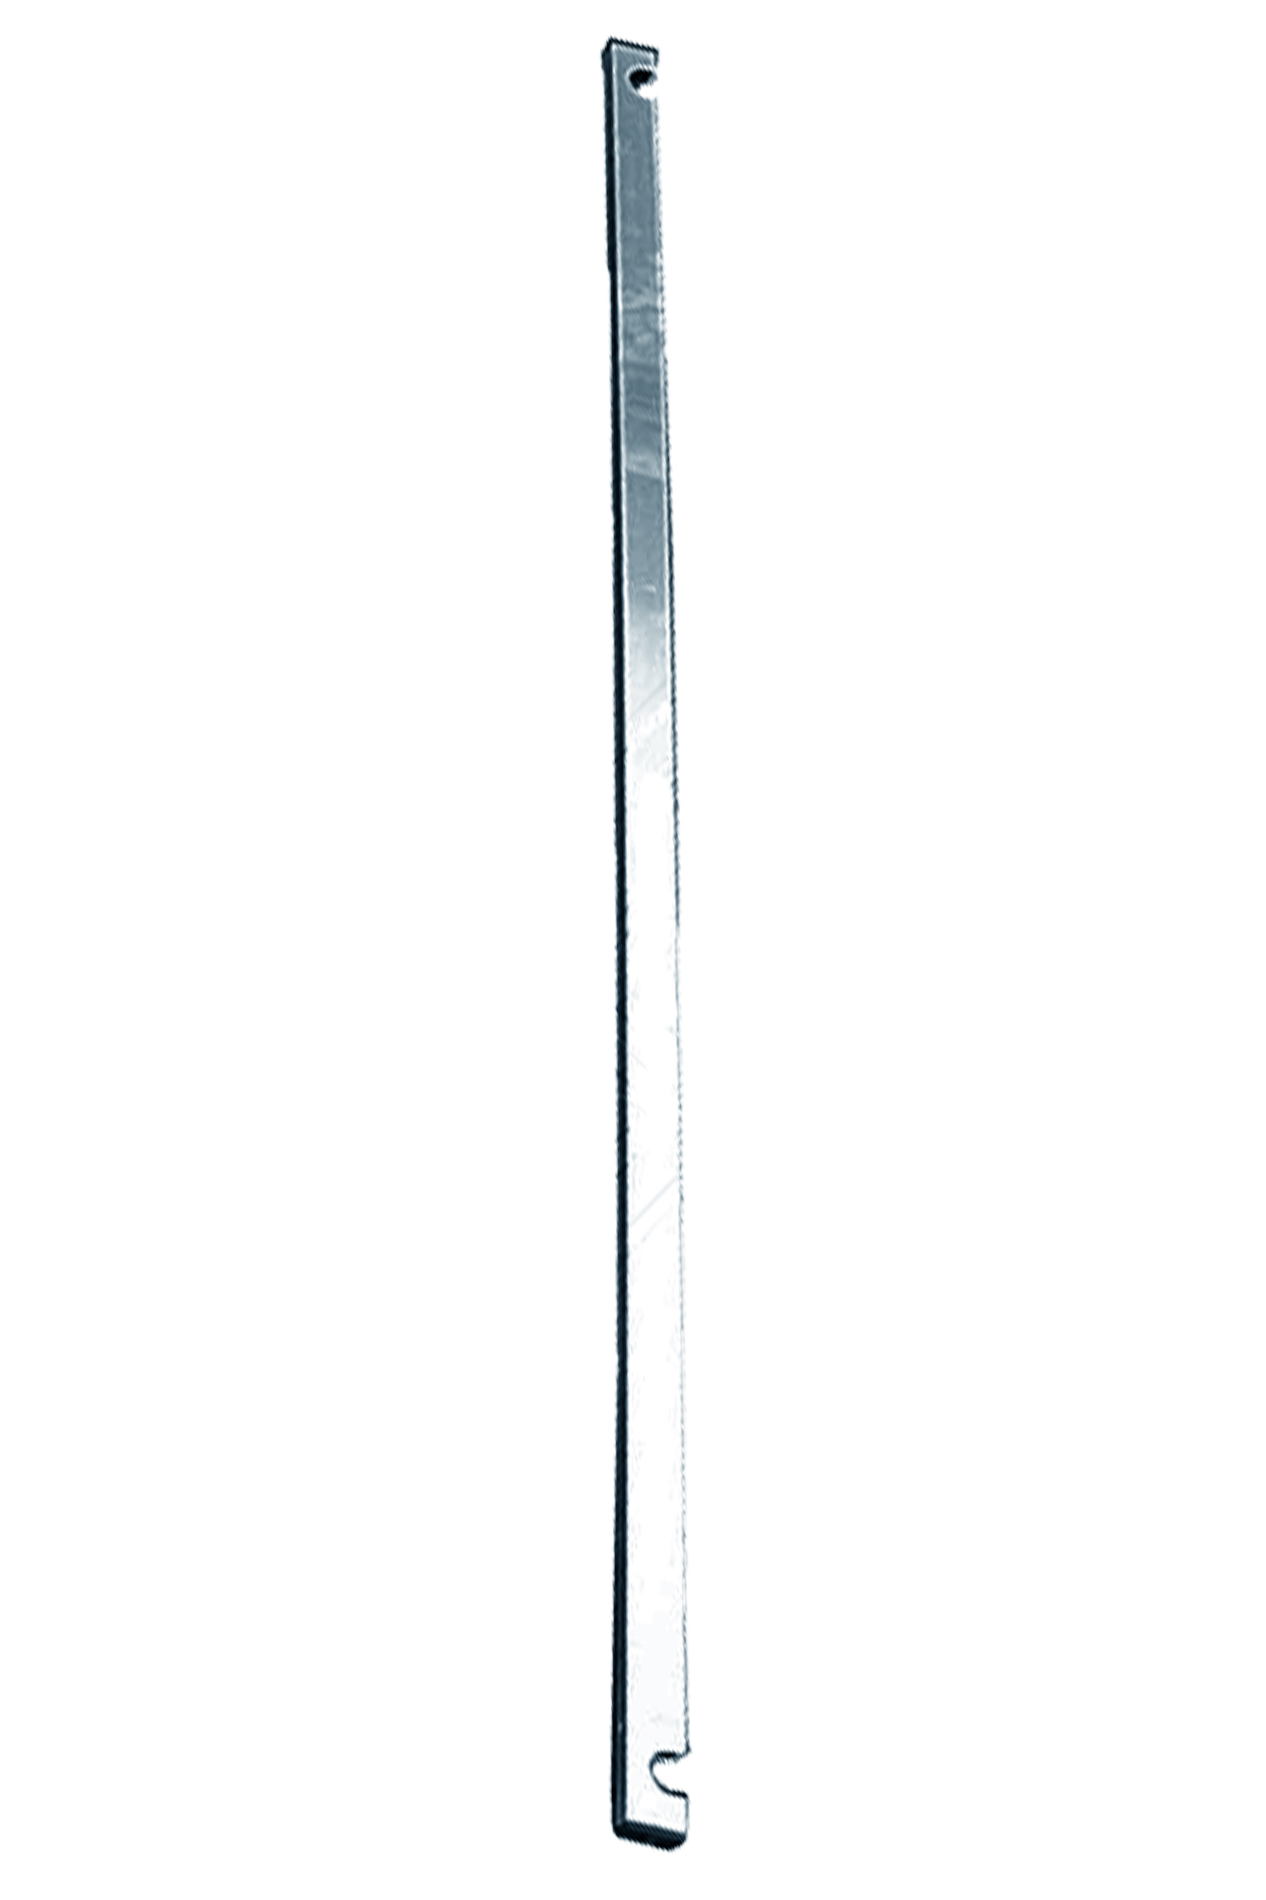 Дополнительное изображение Stabilo серии 1000 рабочая высота 12,2 м, размер площадки (3x0.75 м)